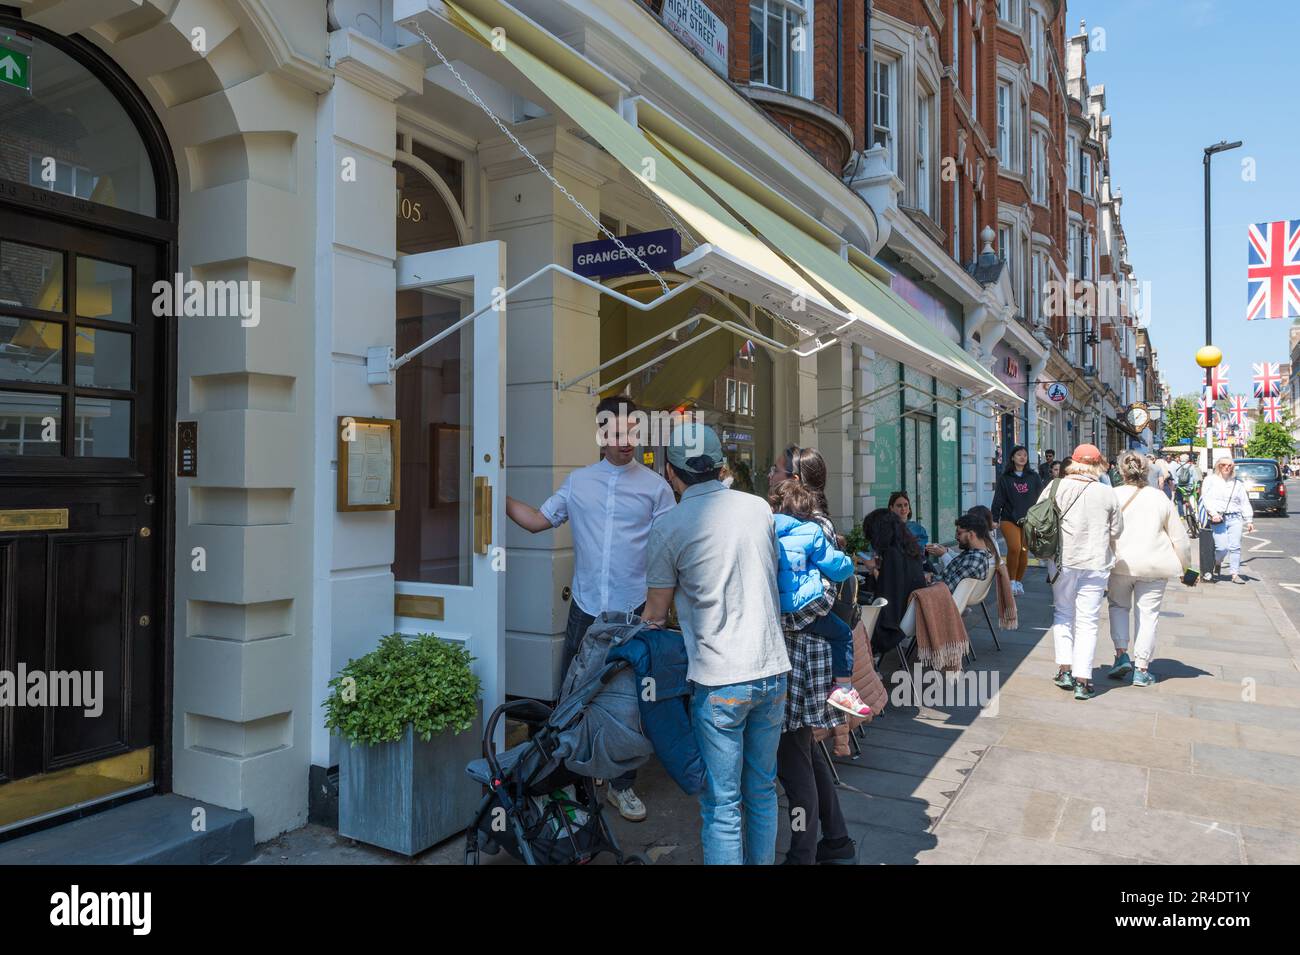 Le serveur accueille les clients à l'entrée du restaurant Granger & Co. Sur Marylebone High Street, Londres, Angleterre, Royaume-Uni Banque D'Images